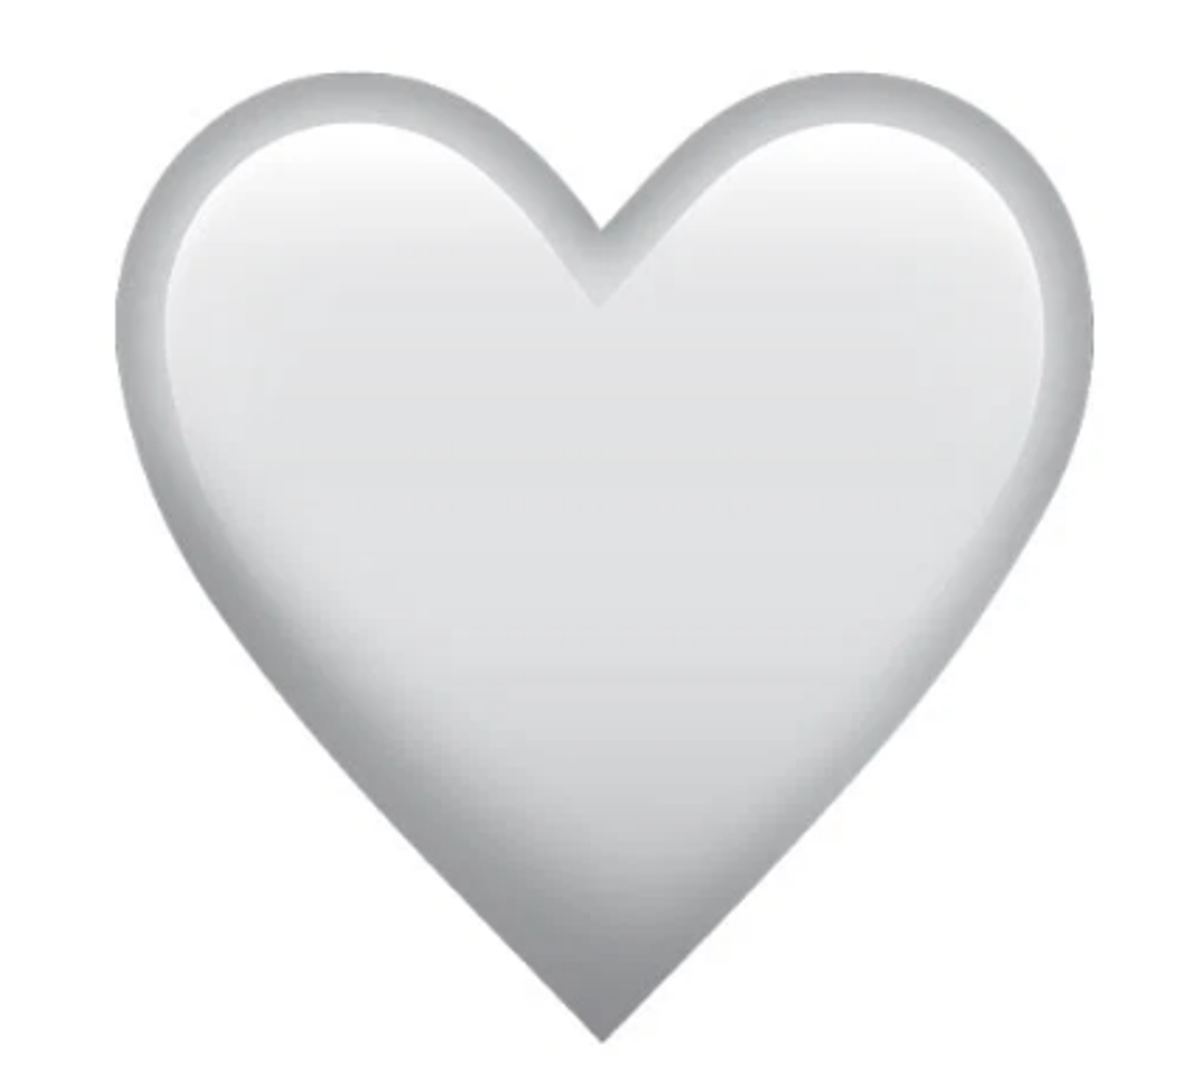 Bijelo srce pojavilo se nedavno u tipkovnici, a ono znači čistu ljubav koja ne može biti uništena. Osim za partnera, koriste ju roditelji kada opisuju ljubav prema djeci.